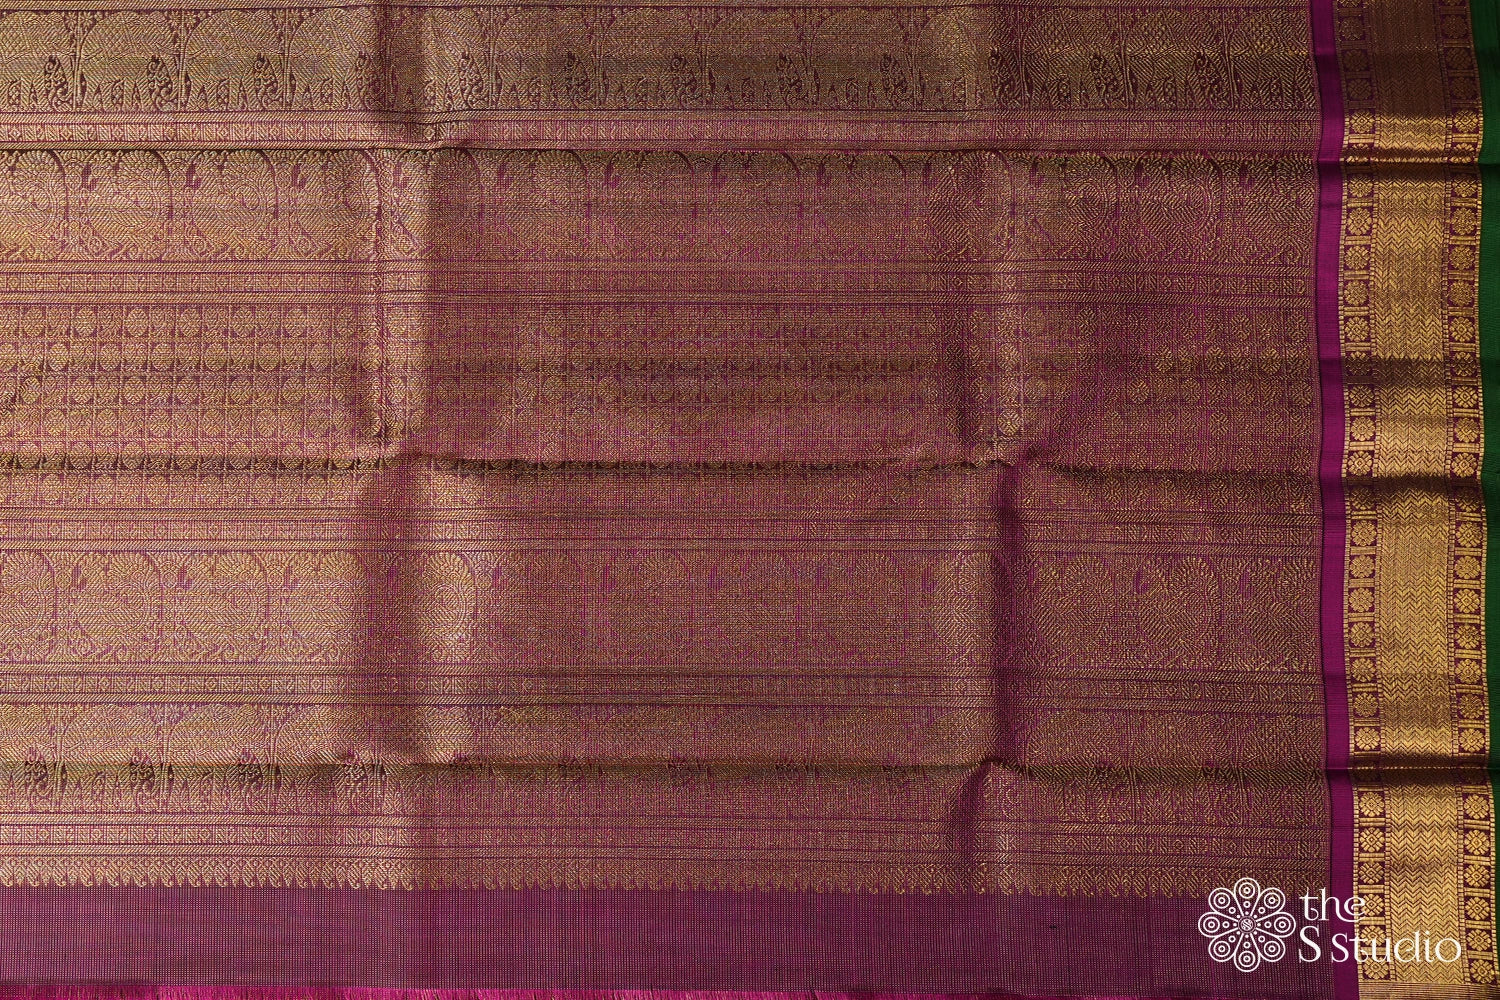 Violet vairaoosi kanchipuram silk saree